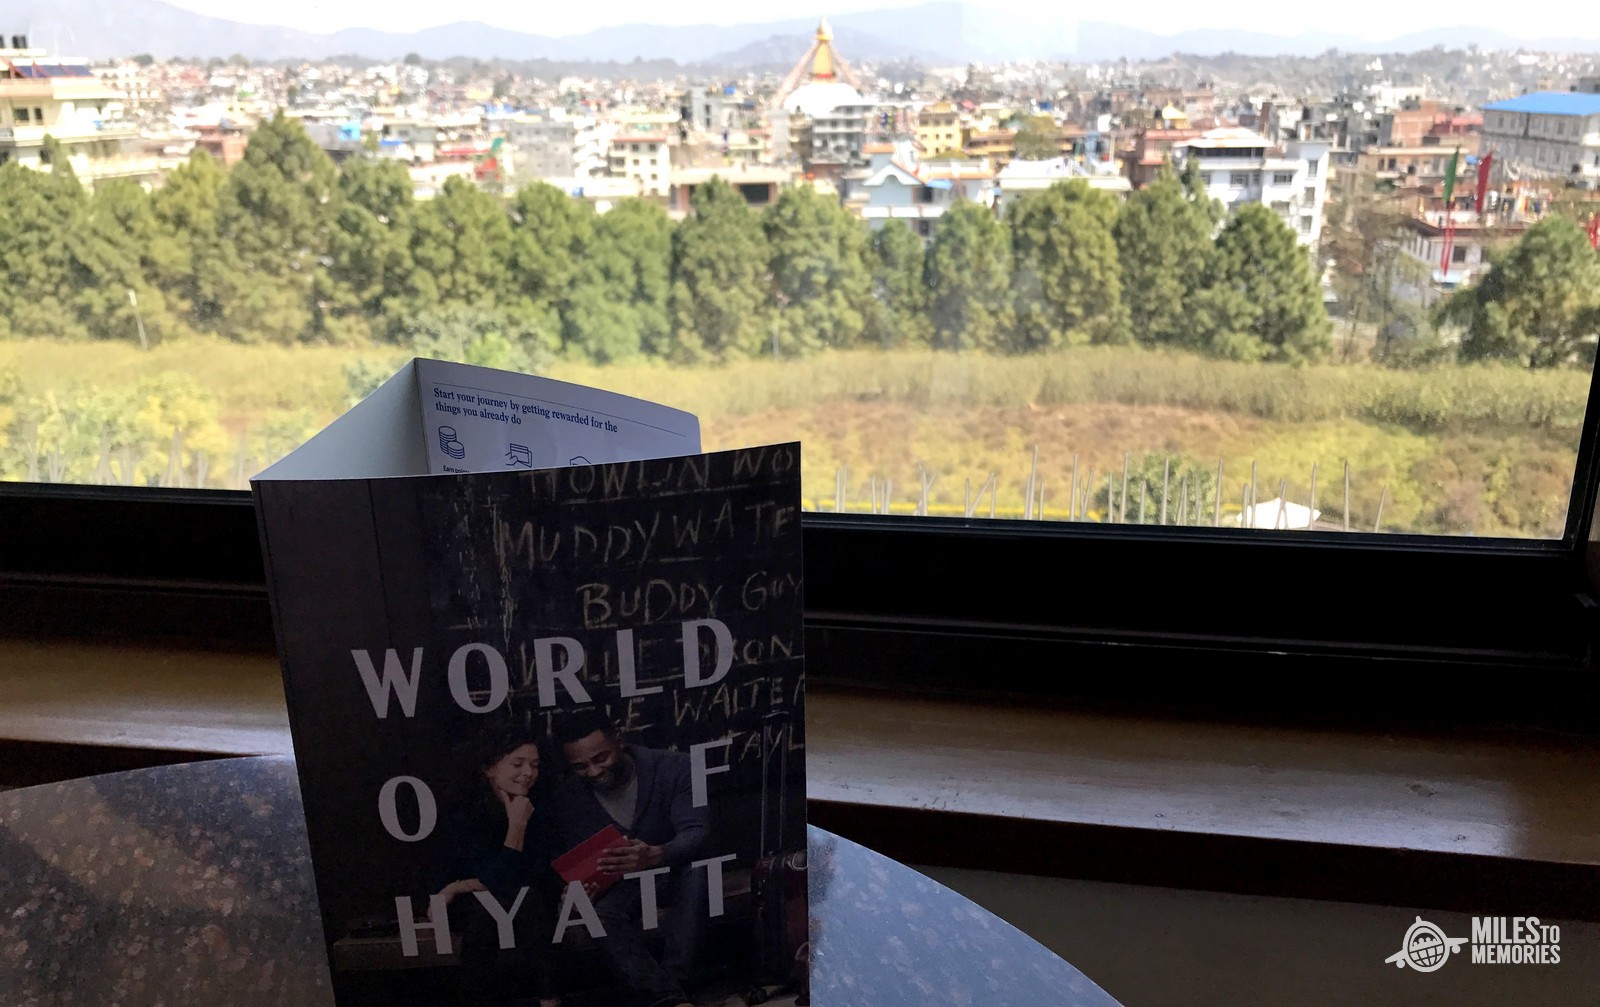 Hyatt Makes Improvements to World of Hyatt for 2018